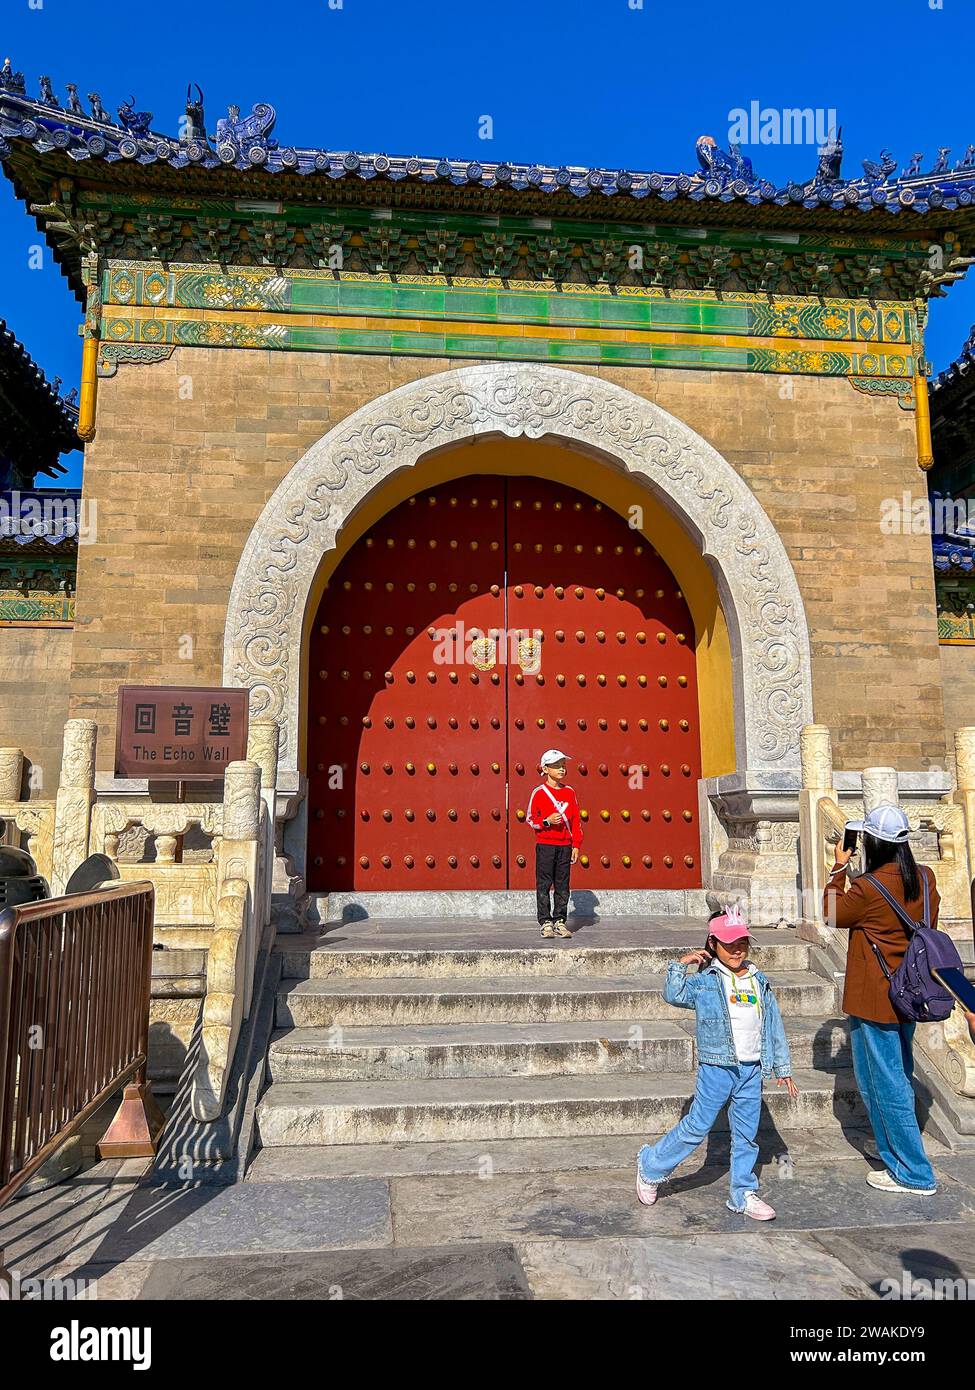 Beijing, China, gente china, familia con niños, turistas, visita en el Templo del Cielo, Monumento Histórico, Muro del Eco, Palacio de Invierno Foto de stock